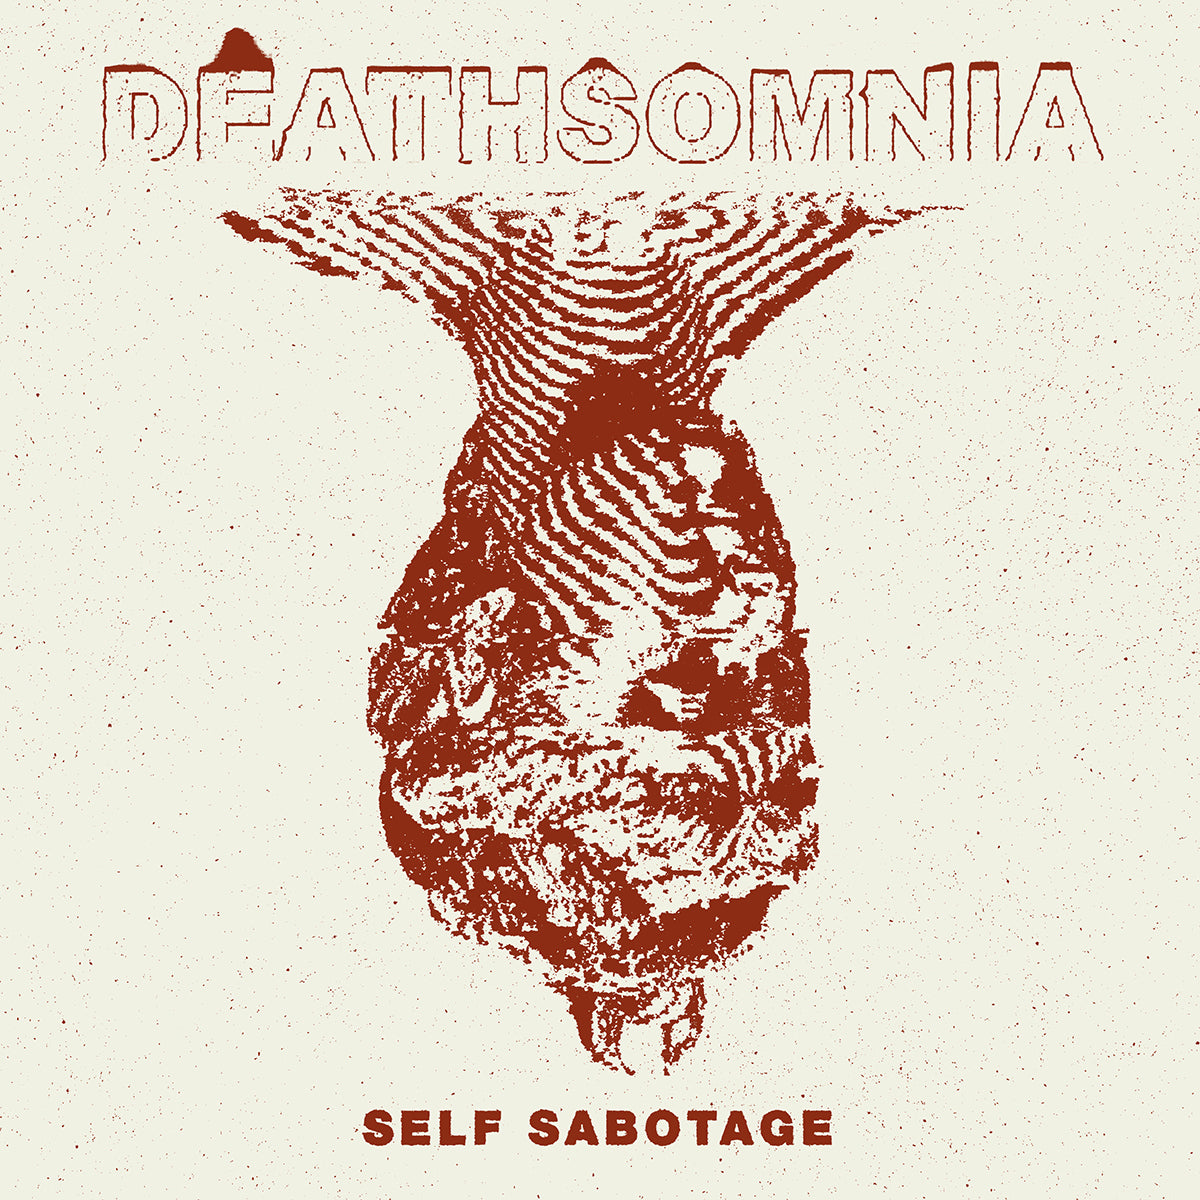 DEATHSOMNIA "Self Sabotage" 7"